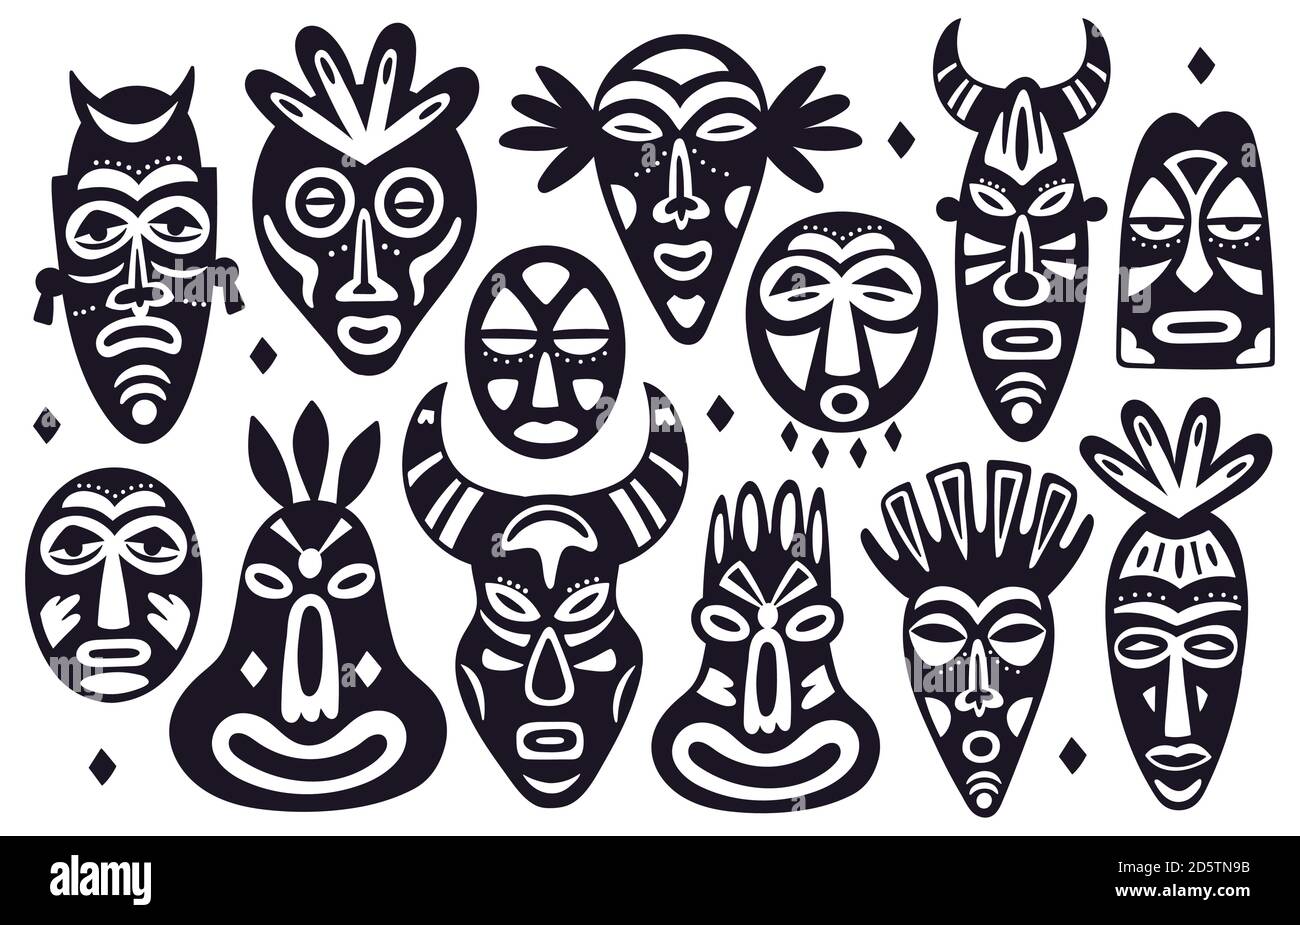 Masques tribaux silhouettes. Masques de visage anciens totem religieux africains, masques de visage ethnique hawaïen dessinés à la main, masques rituels ensemble d'illustration vectorielle Illustration de Vecteur